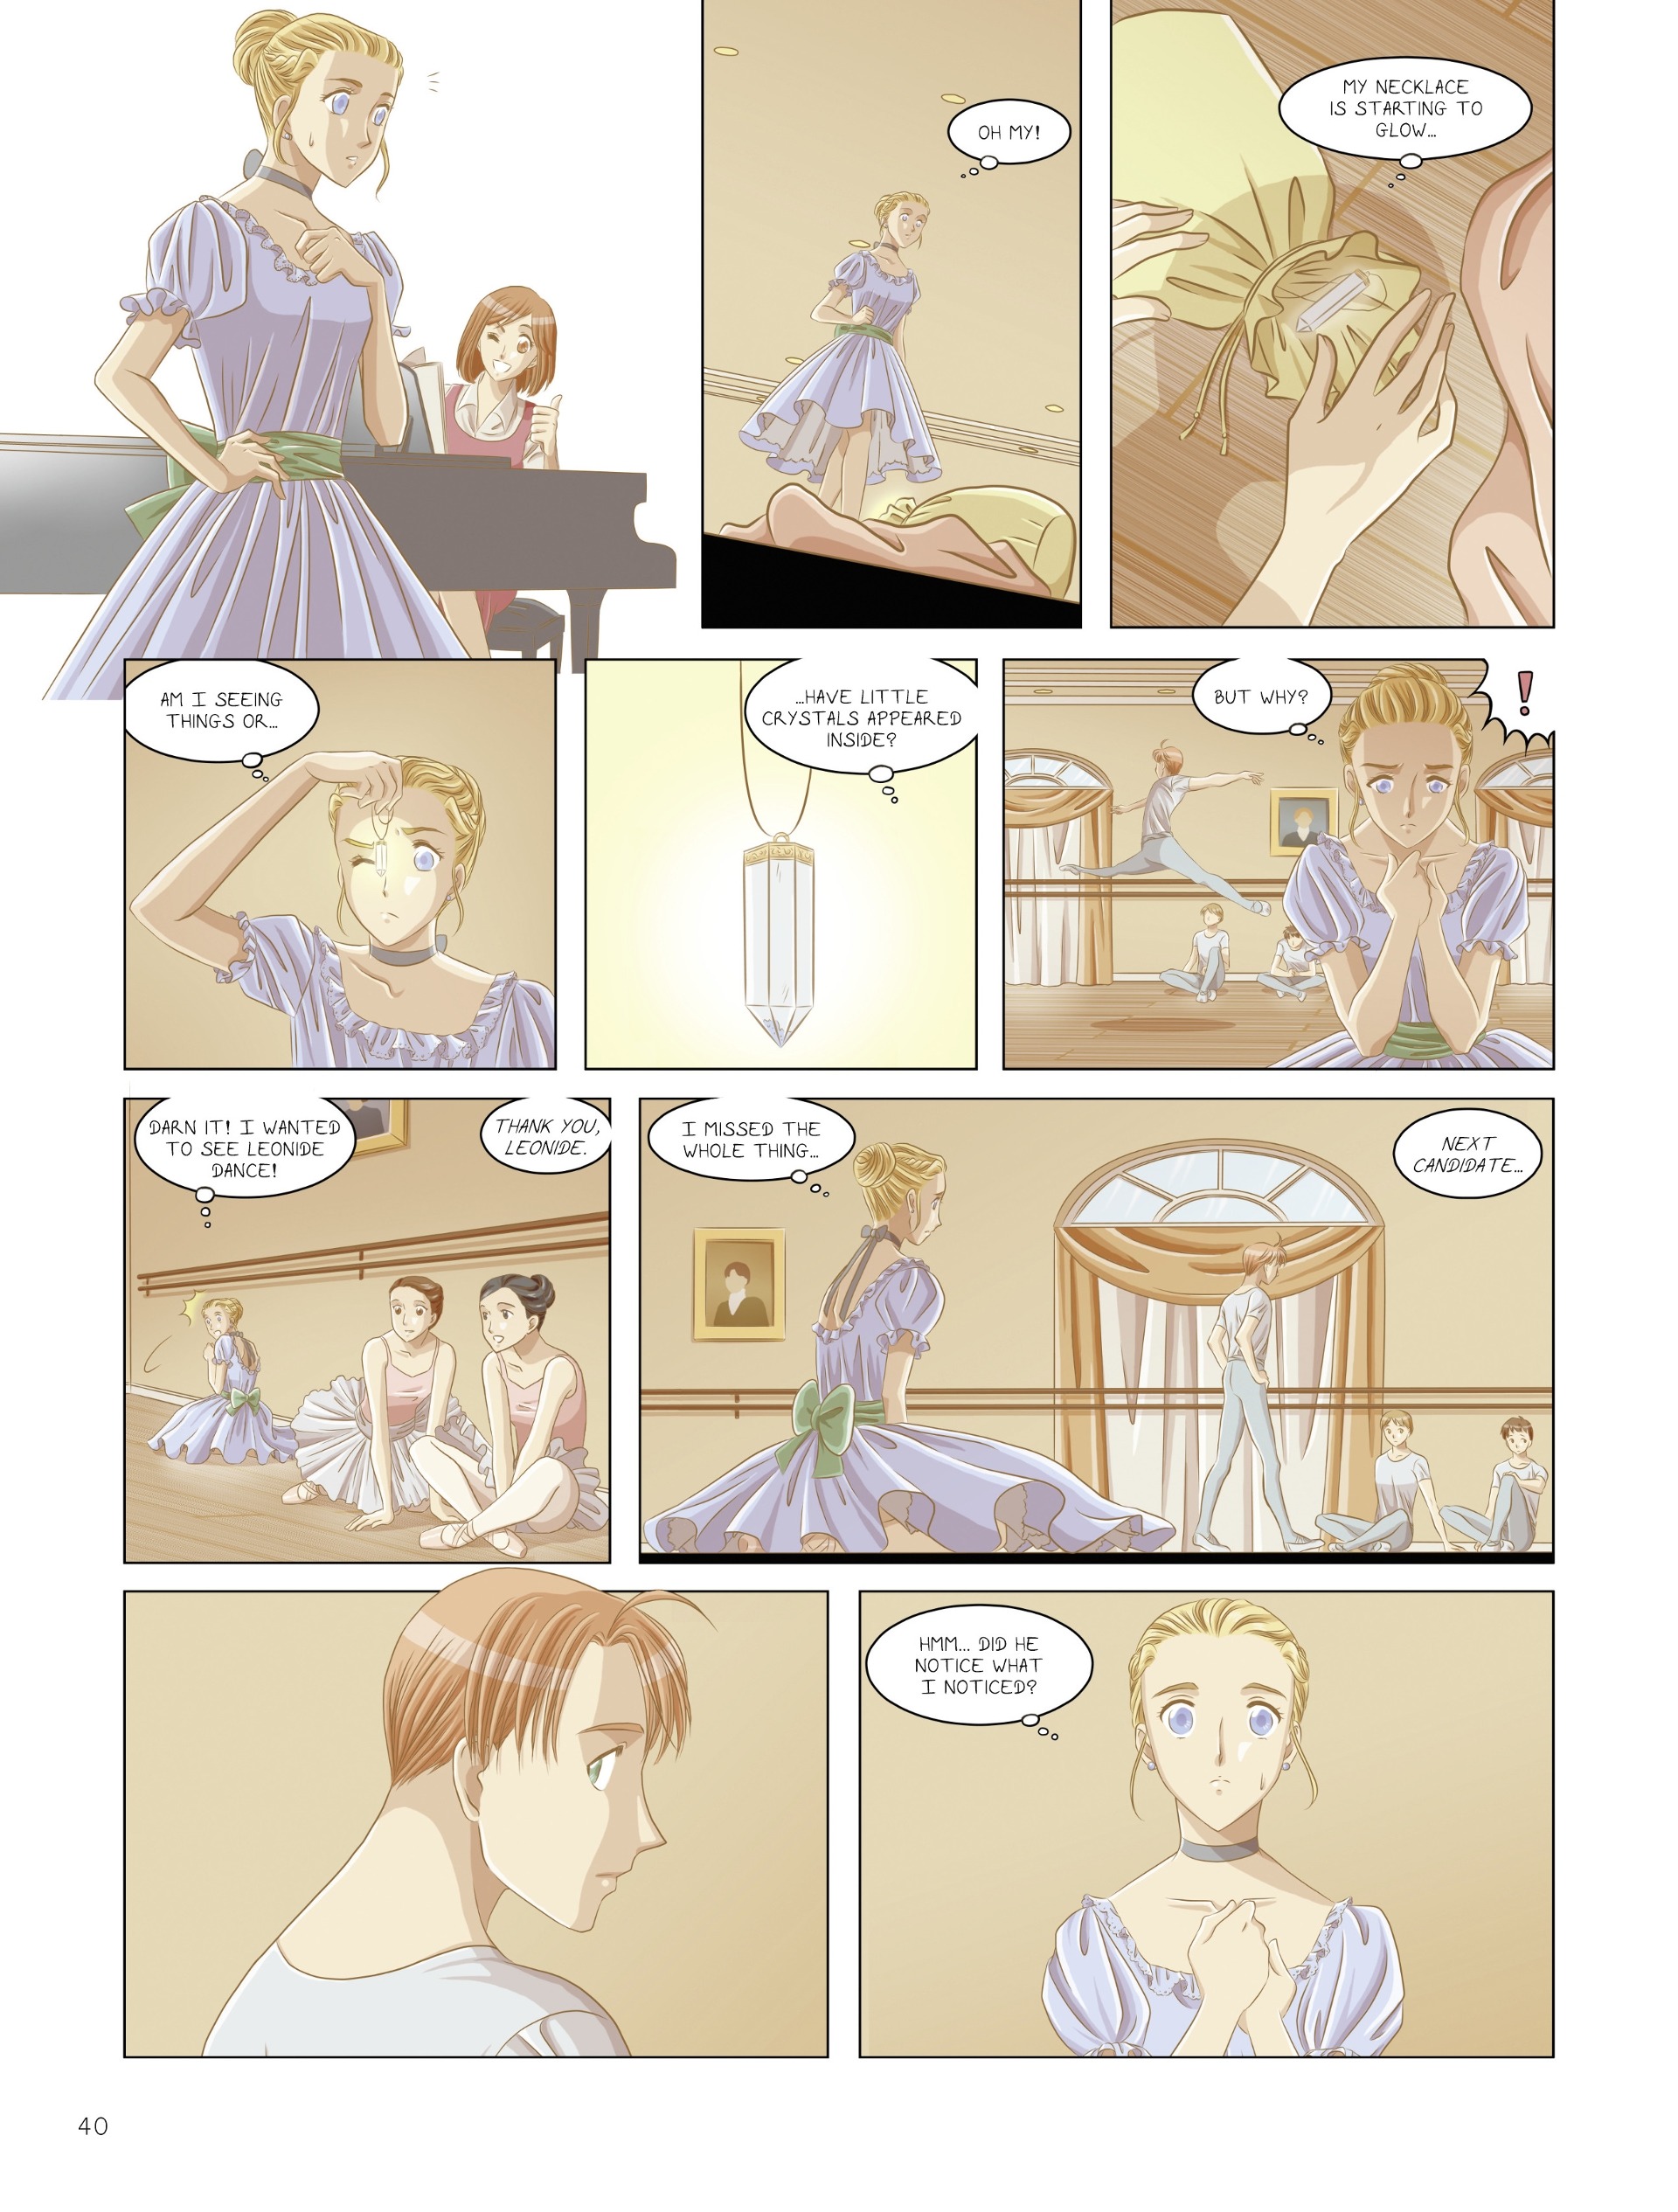 Read online Sleeping Beauty comic -  Issue #1 - 40